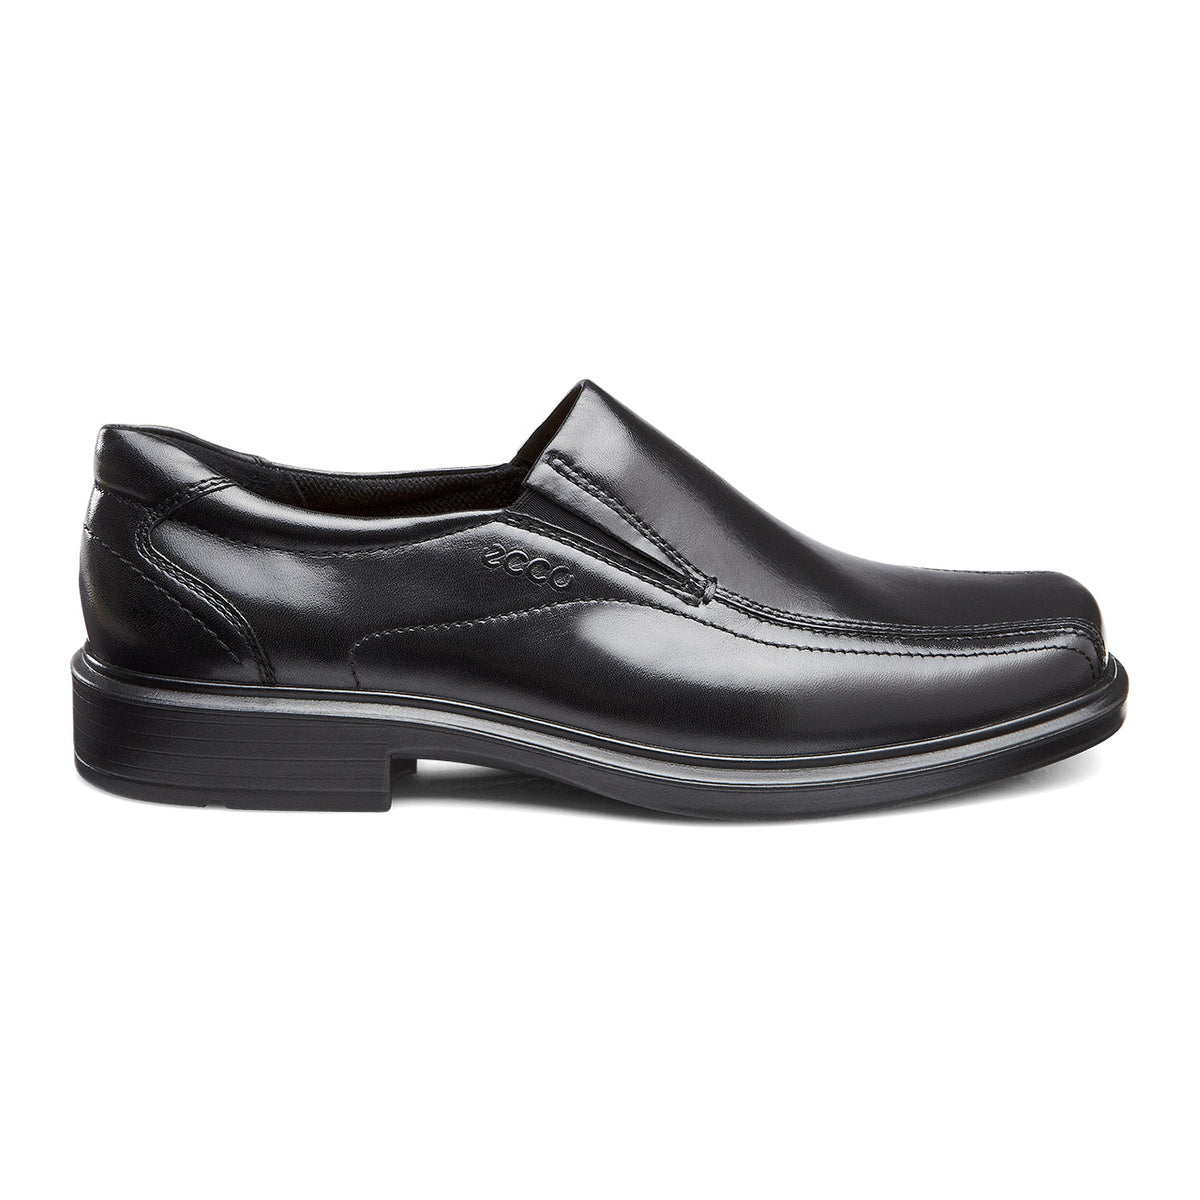 ECCO Helsinki Leather Slip On Dress Shoe - Black